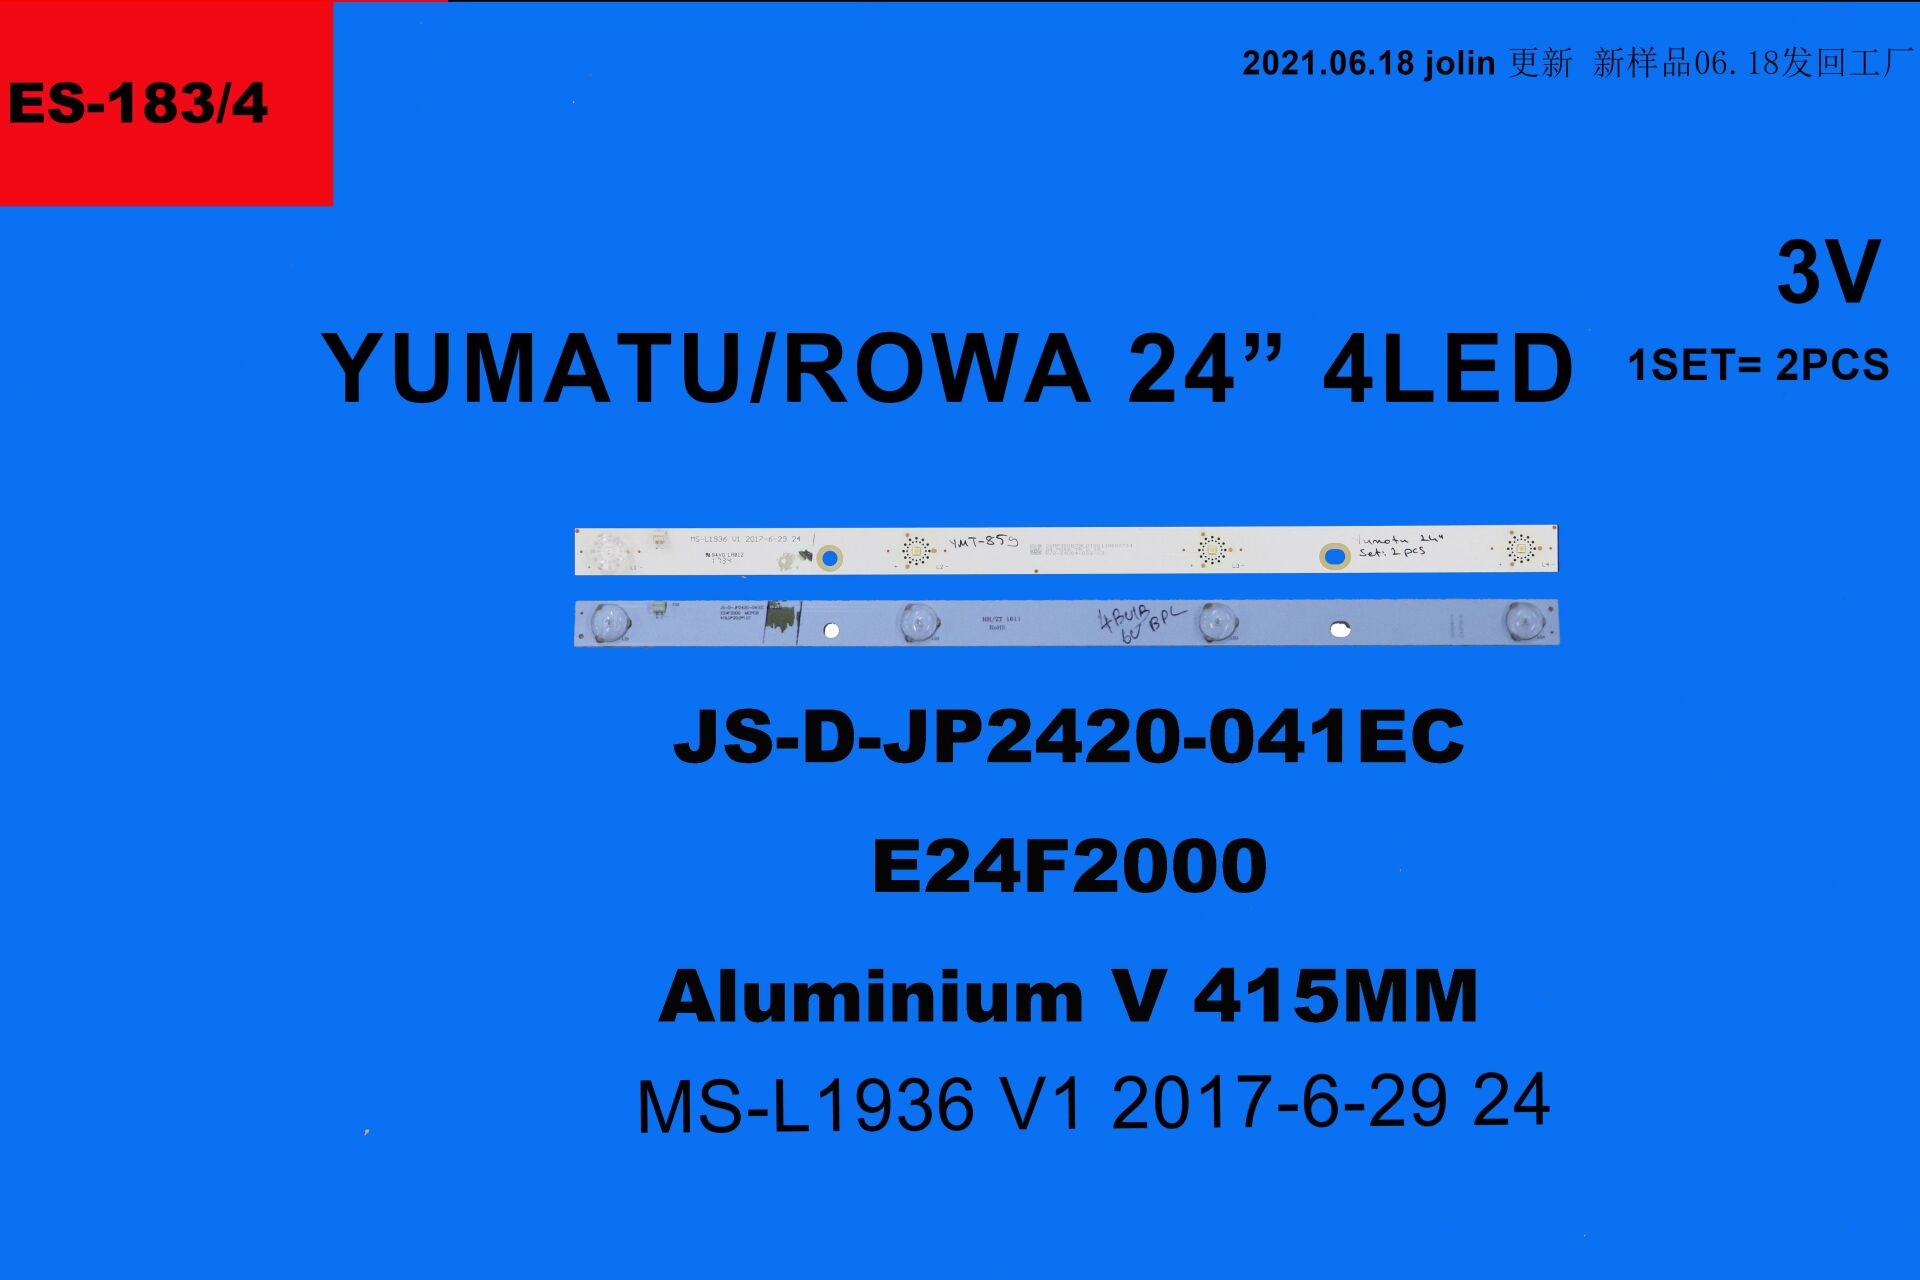 LCD LED-2362 TAKIM 2 Lİ-JS-D-JP2420-041EC,MS-L 1936 V1 2W-GEN-183-WİNKEL